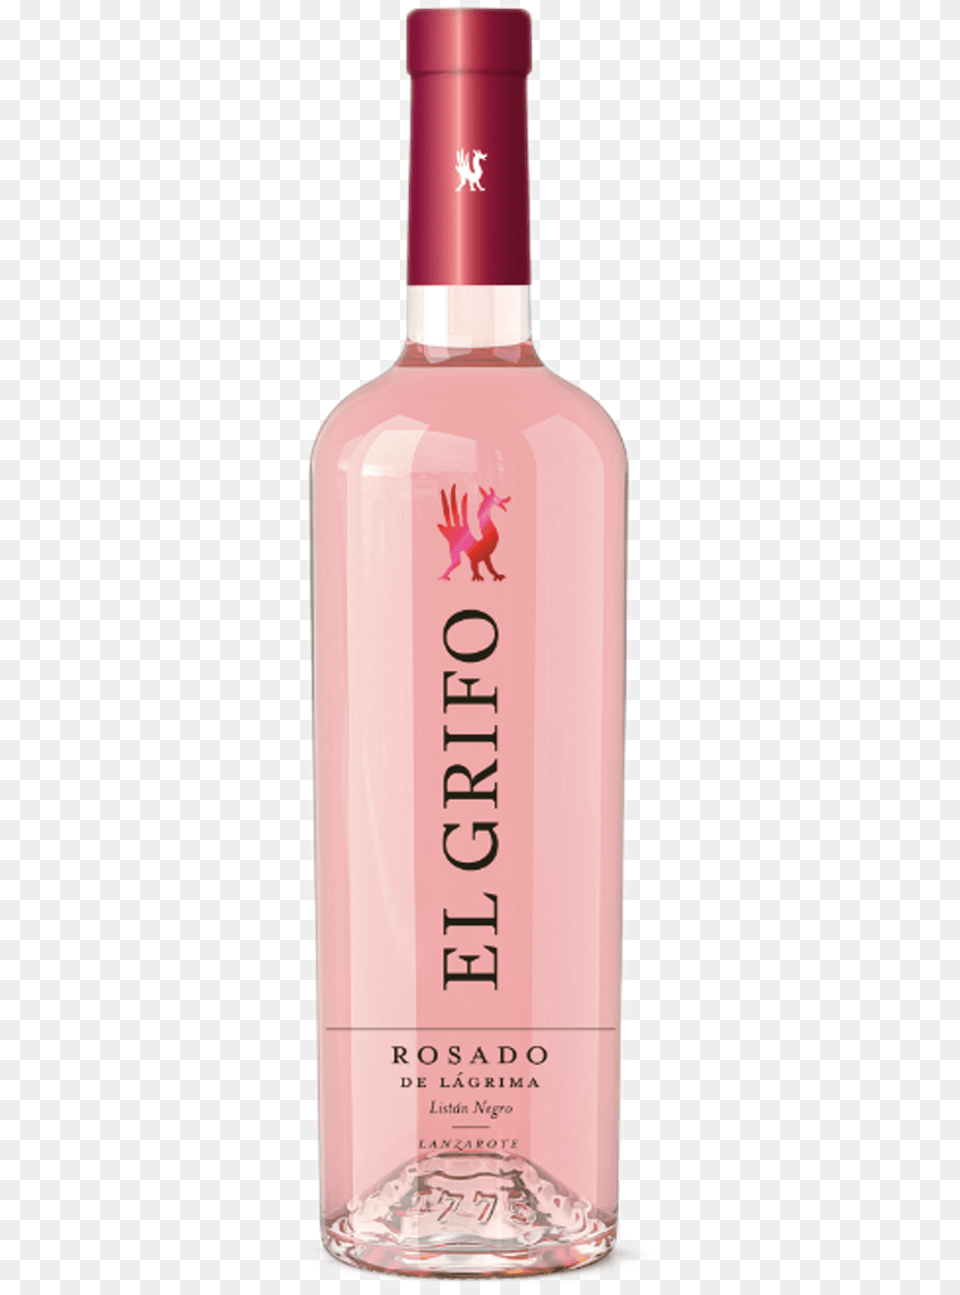 Grifo Rosado De Lgrima, Alcohol, Beverage, Liquor, Bottle Png Image